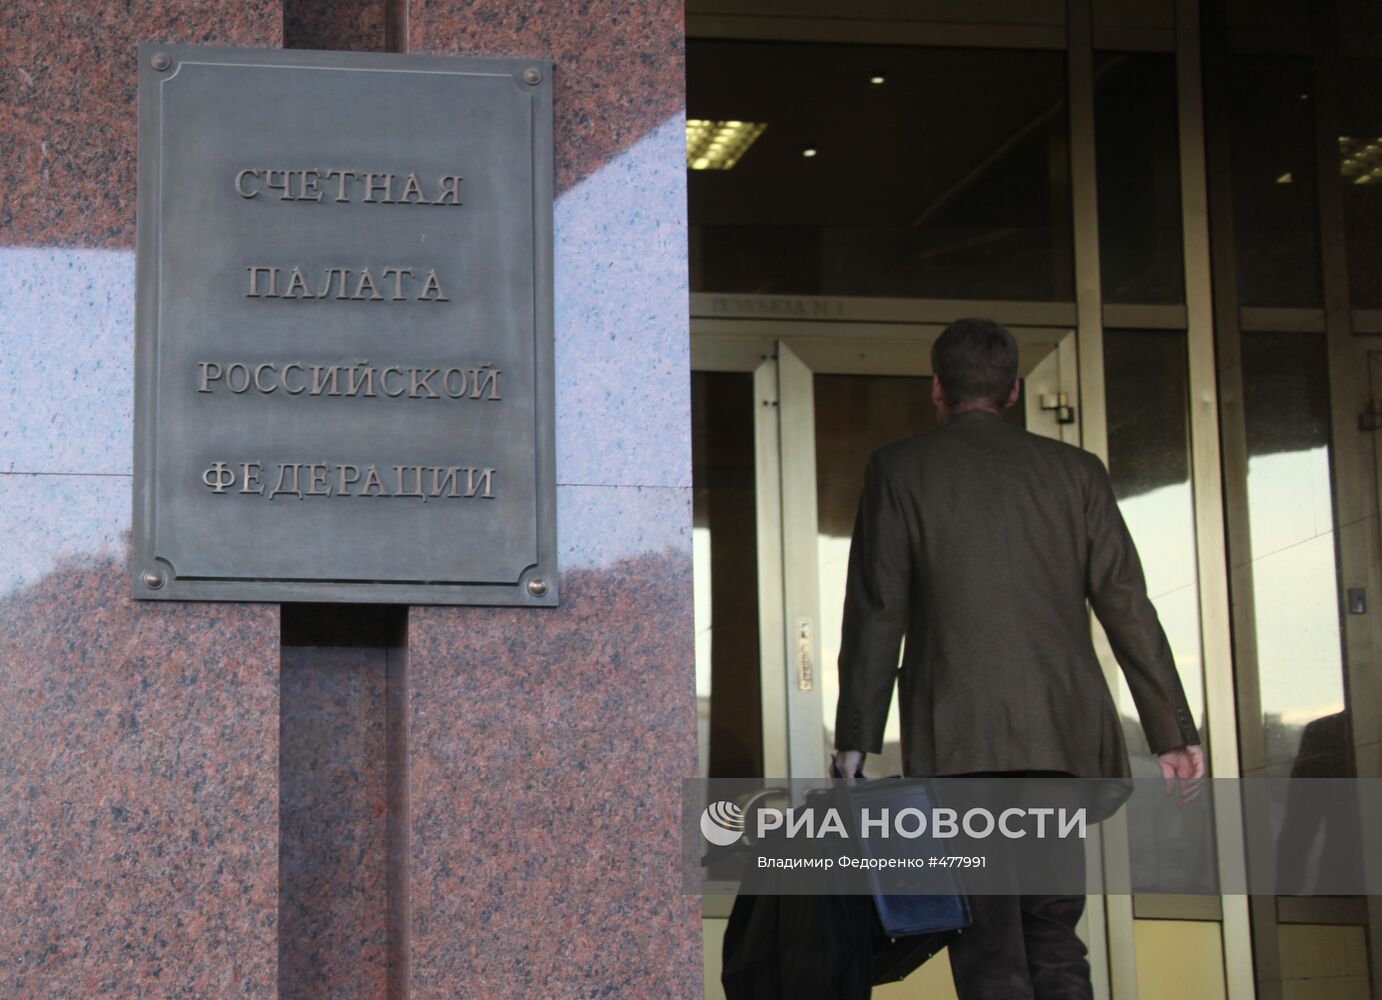 Здание Счетной палаты РФ на Зубовской улице в Москве